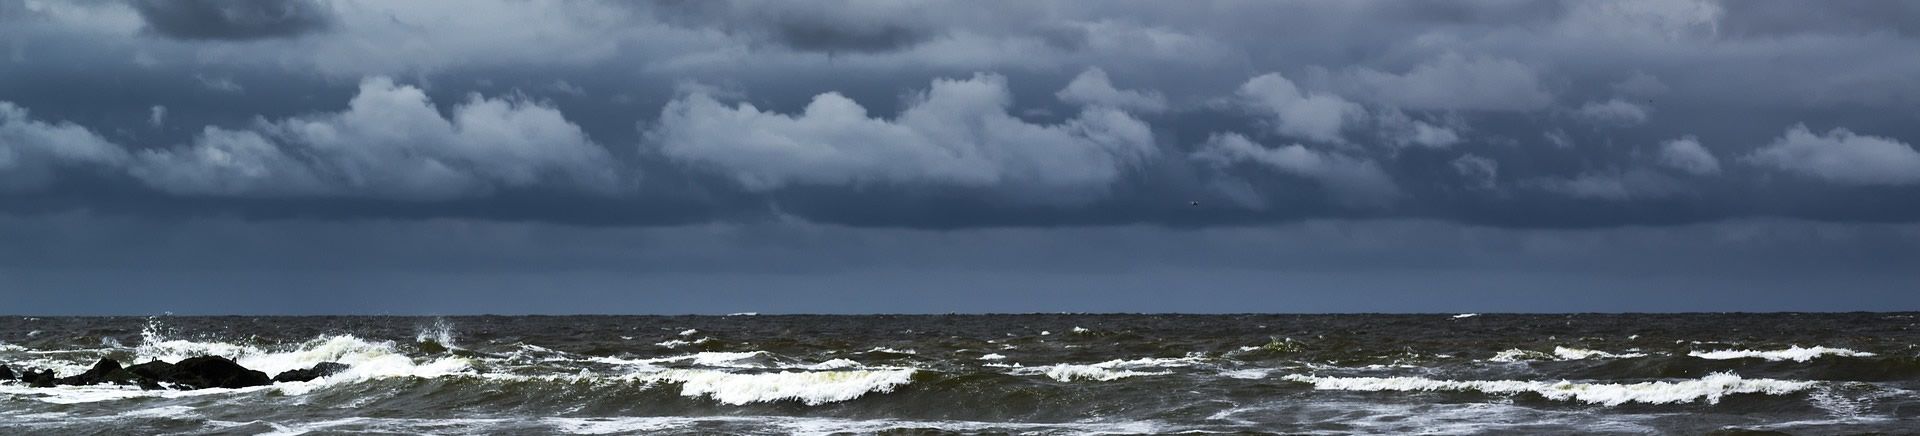 Stormachtige zee en strand op Texel